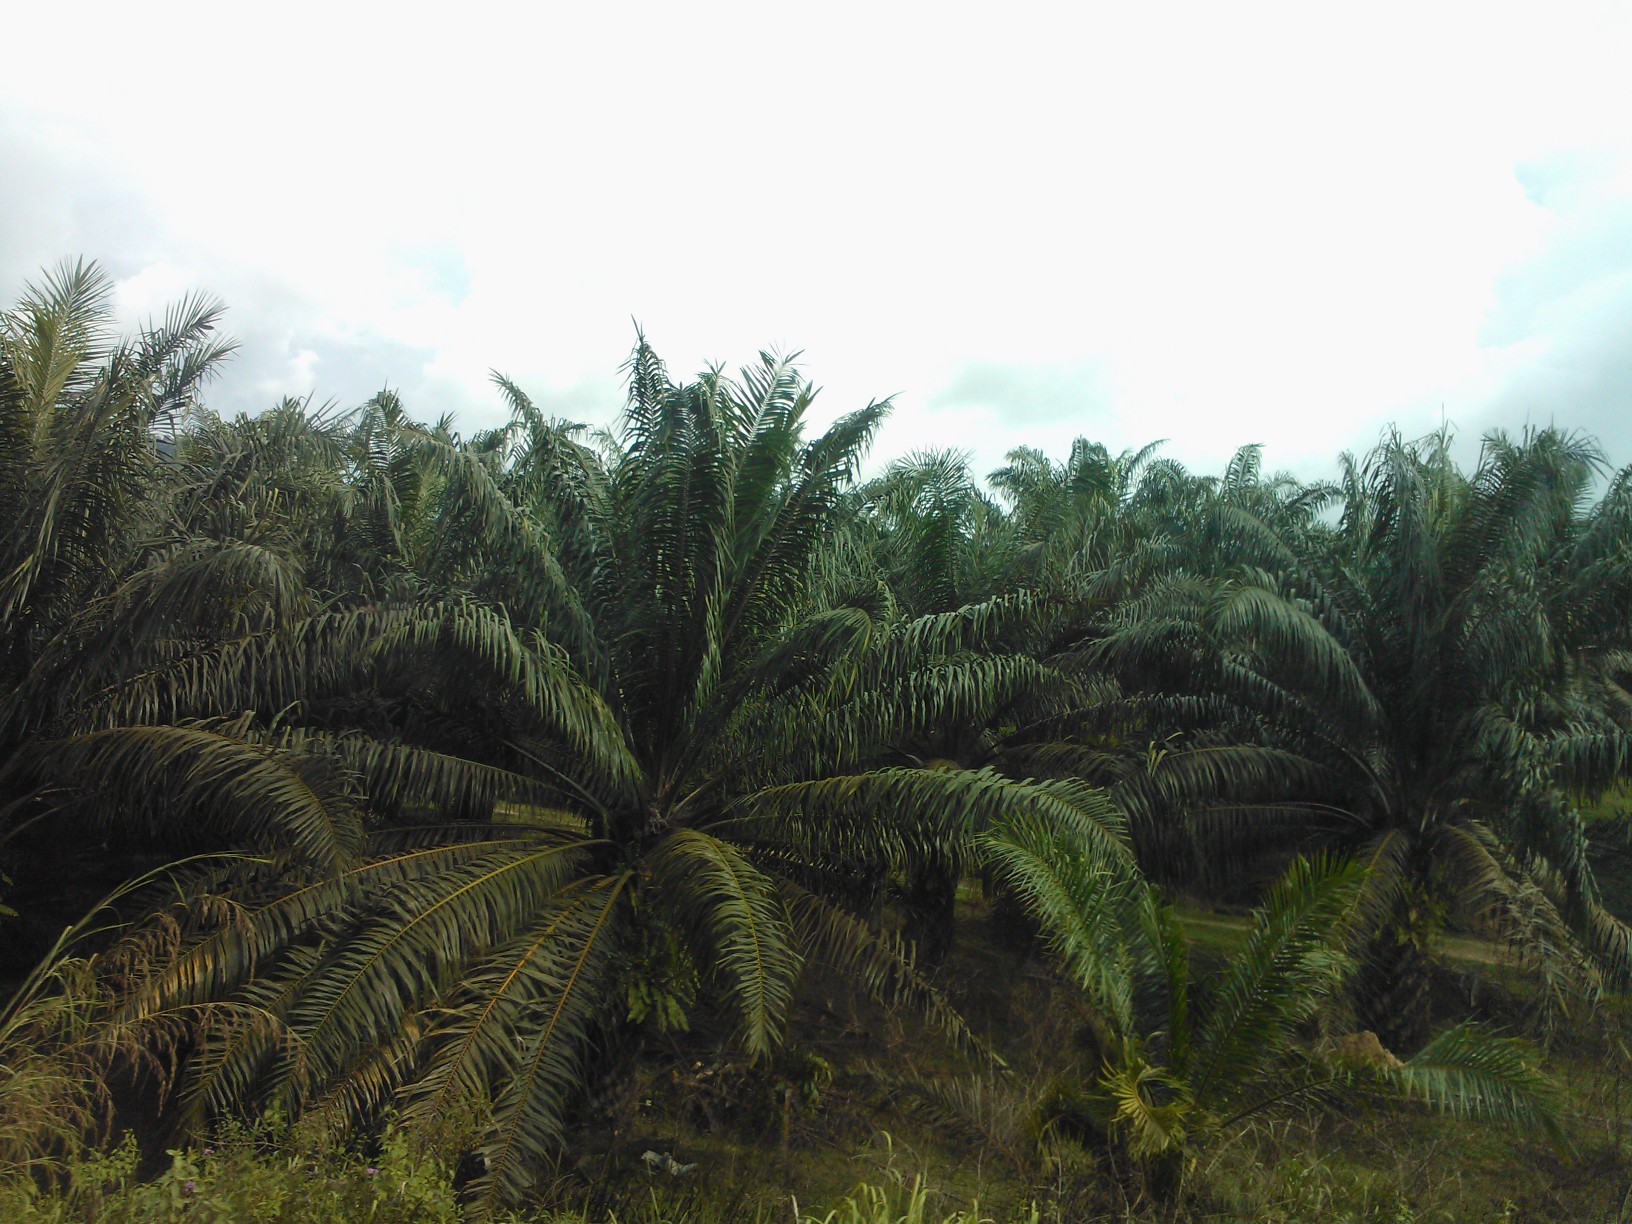 Palmuöljyn tuotanto aiheuttaa usein metsäkatoa, mutta ei välttämättä. Kaikki riippuu siitä, miten tuotanto on järjestetty. Palmuöljy on tärkeä ekosysteemipalvelu; sitä käytetään monissa kulutustavaroissa. Kuva: Kai Lintunen